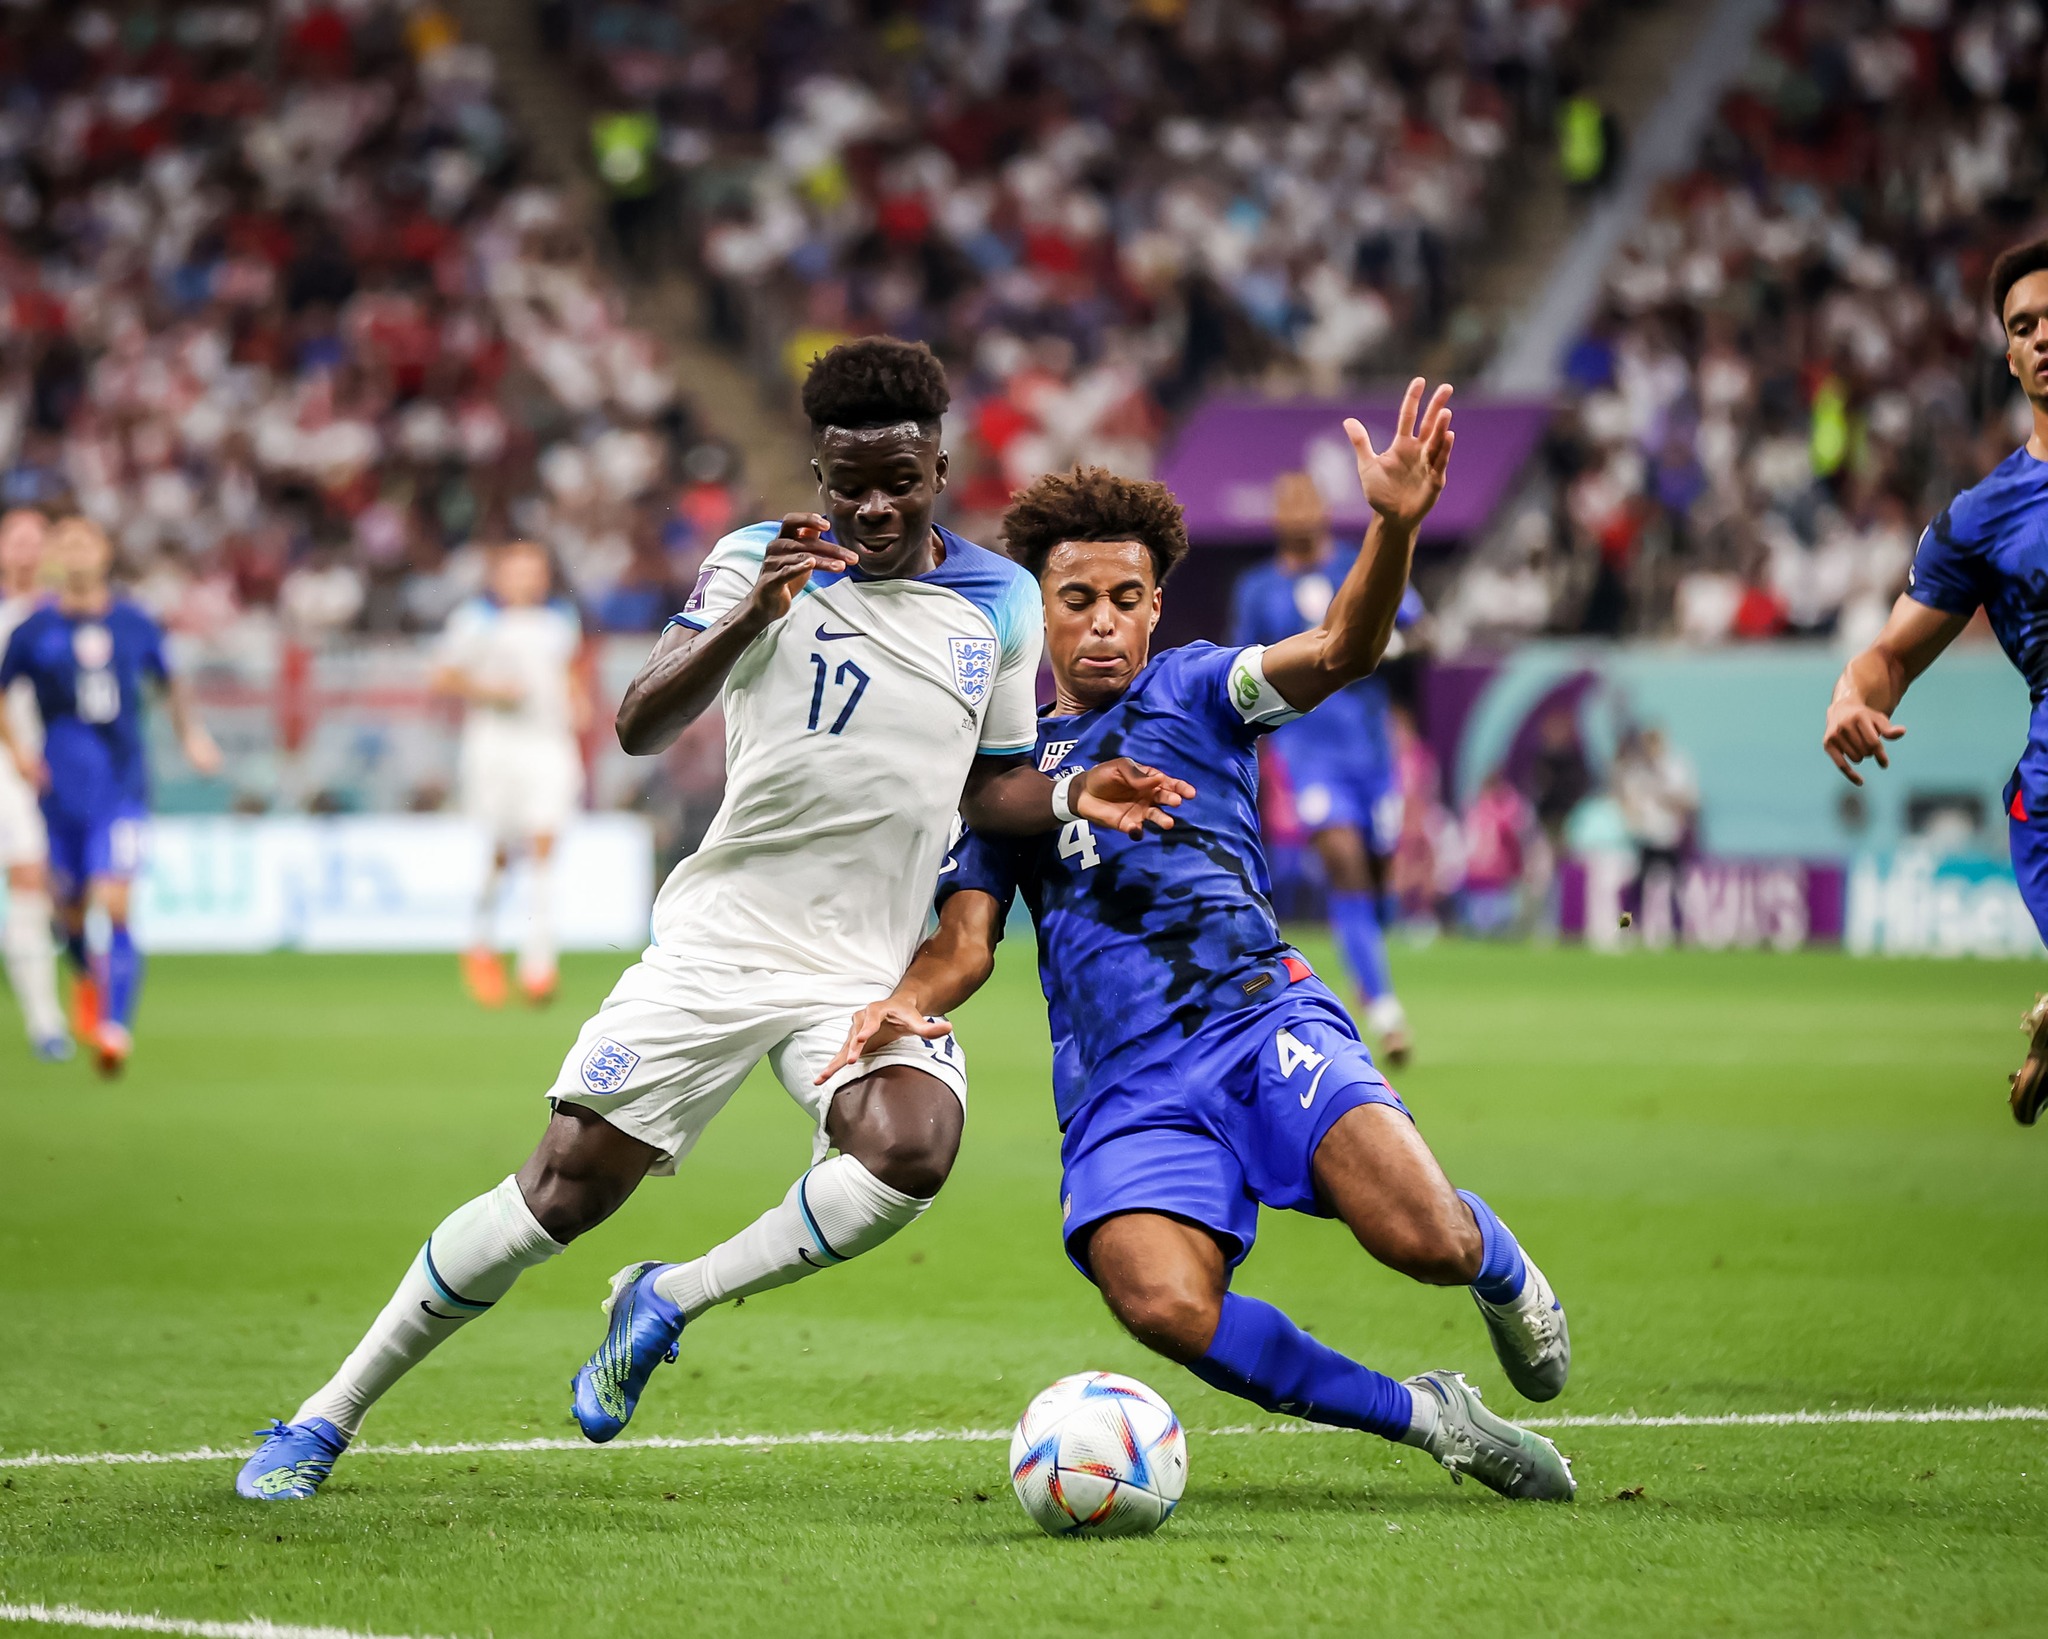 لقاء انجلترا × امريكا كامل في كأس العالم 2022 قطر بتعليق عصام الشوالي